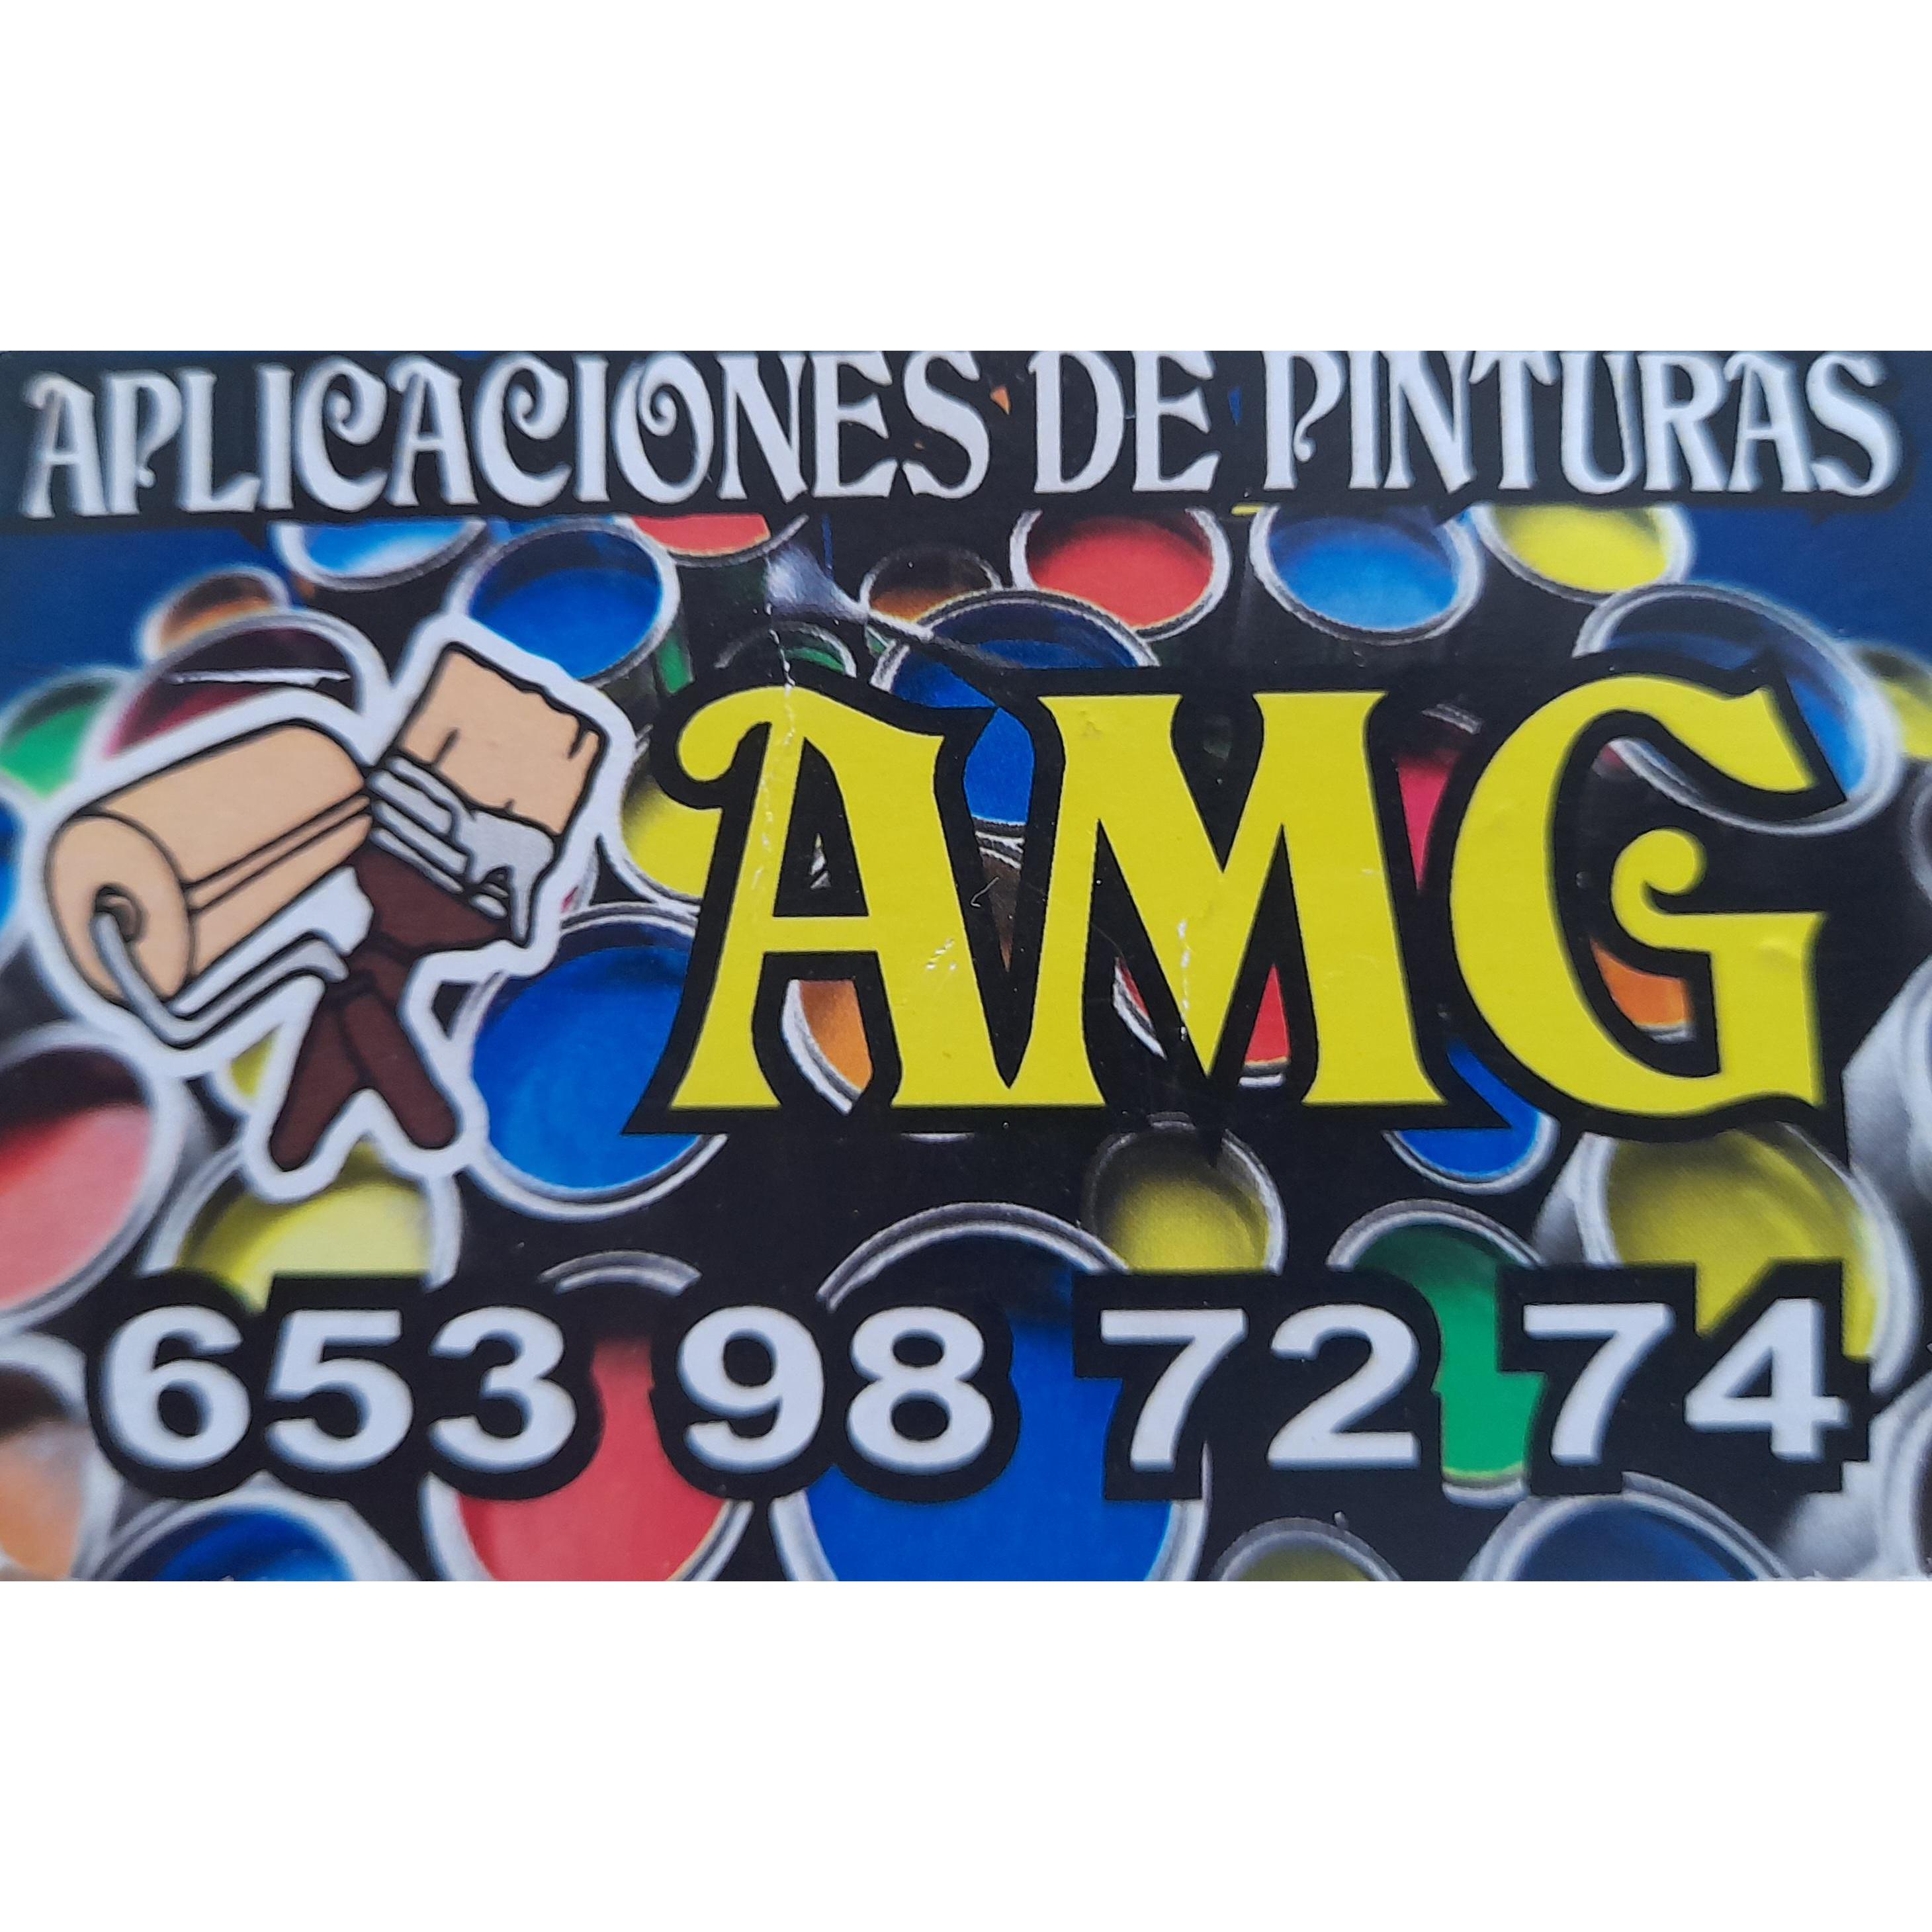 Pintor Amg Aljaraque-Huelva Logo